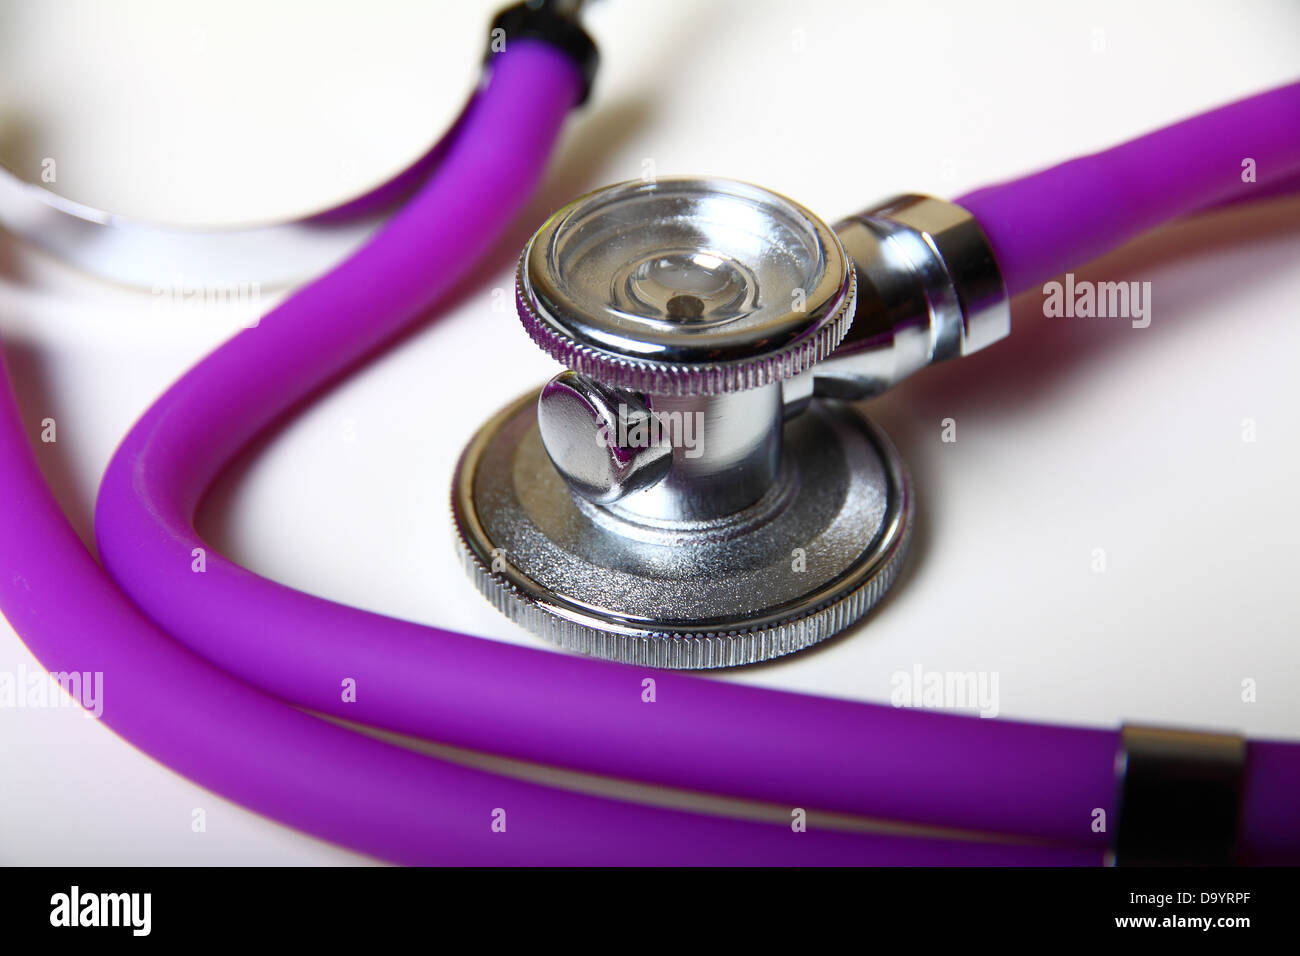 Stethoscope on white background Stock Photo